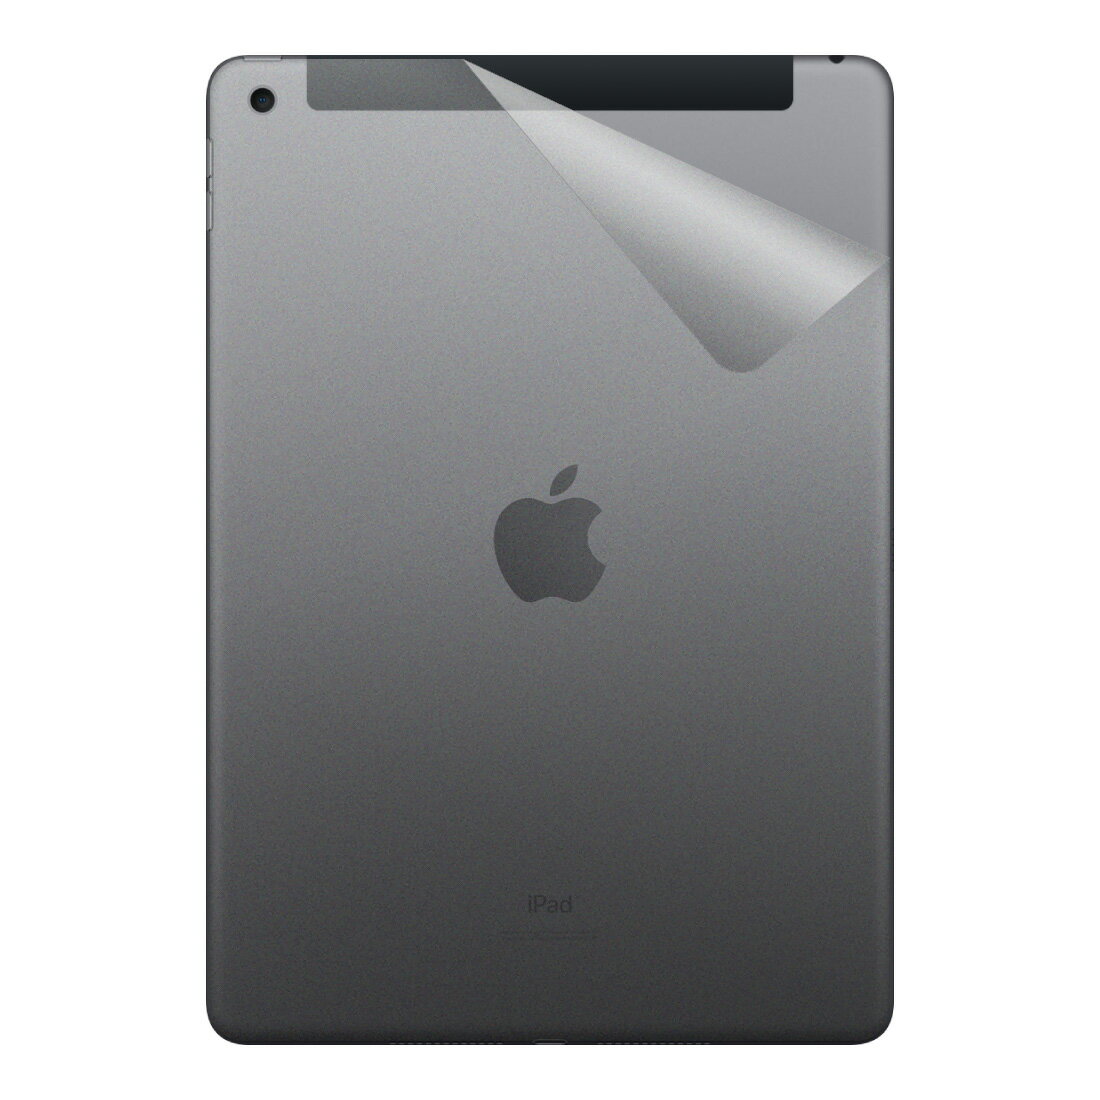 スキンシール iPad (第8世代・2020年発売モデル) 【透明・すりガラス調】 日本製 自社製造直販